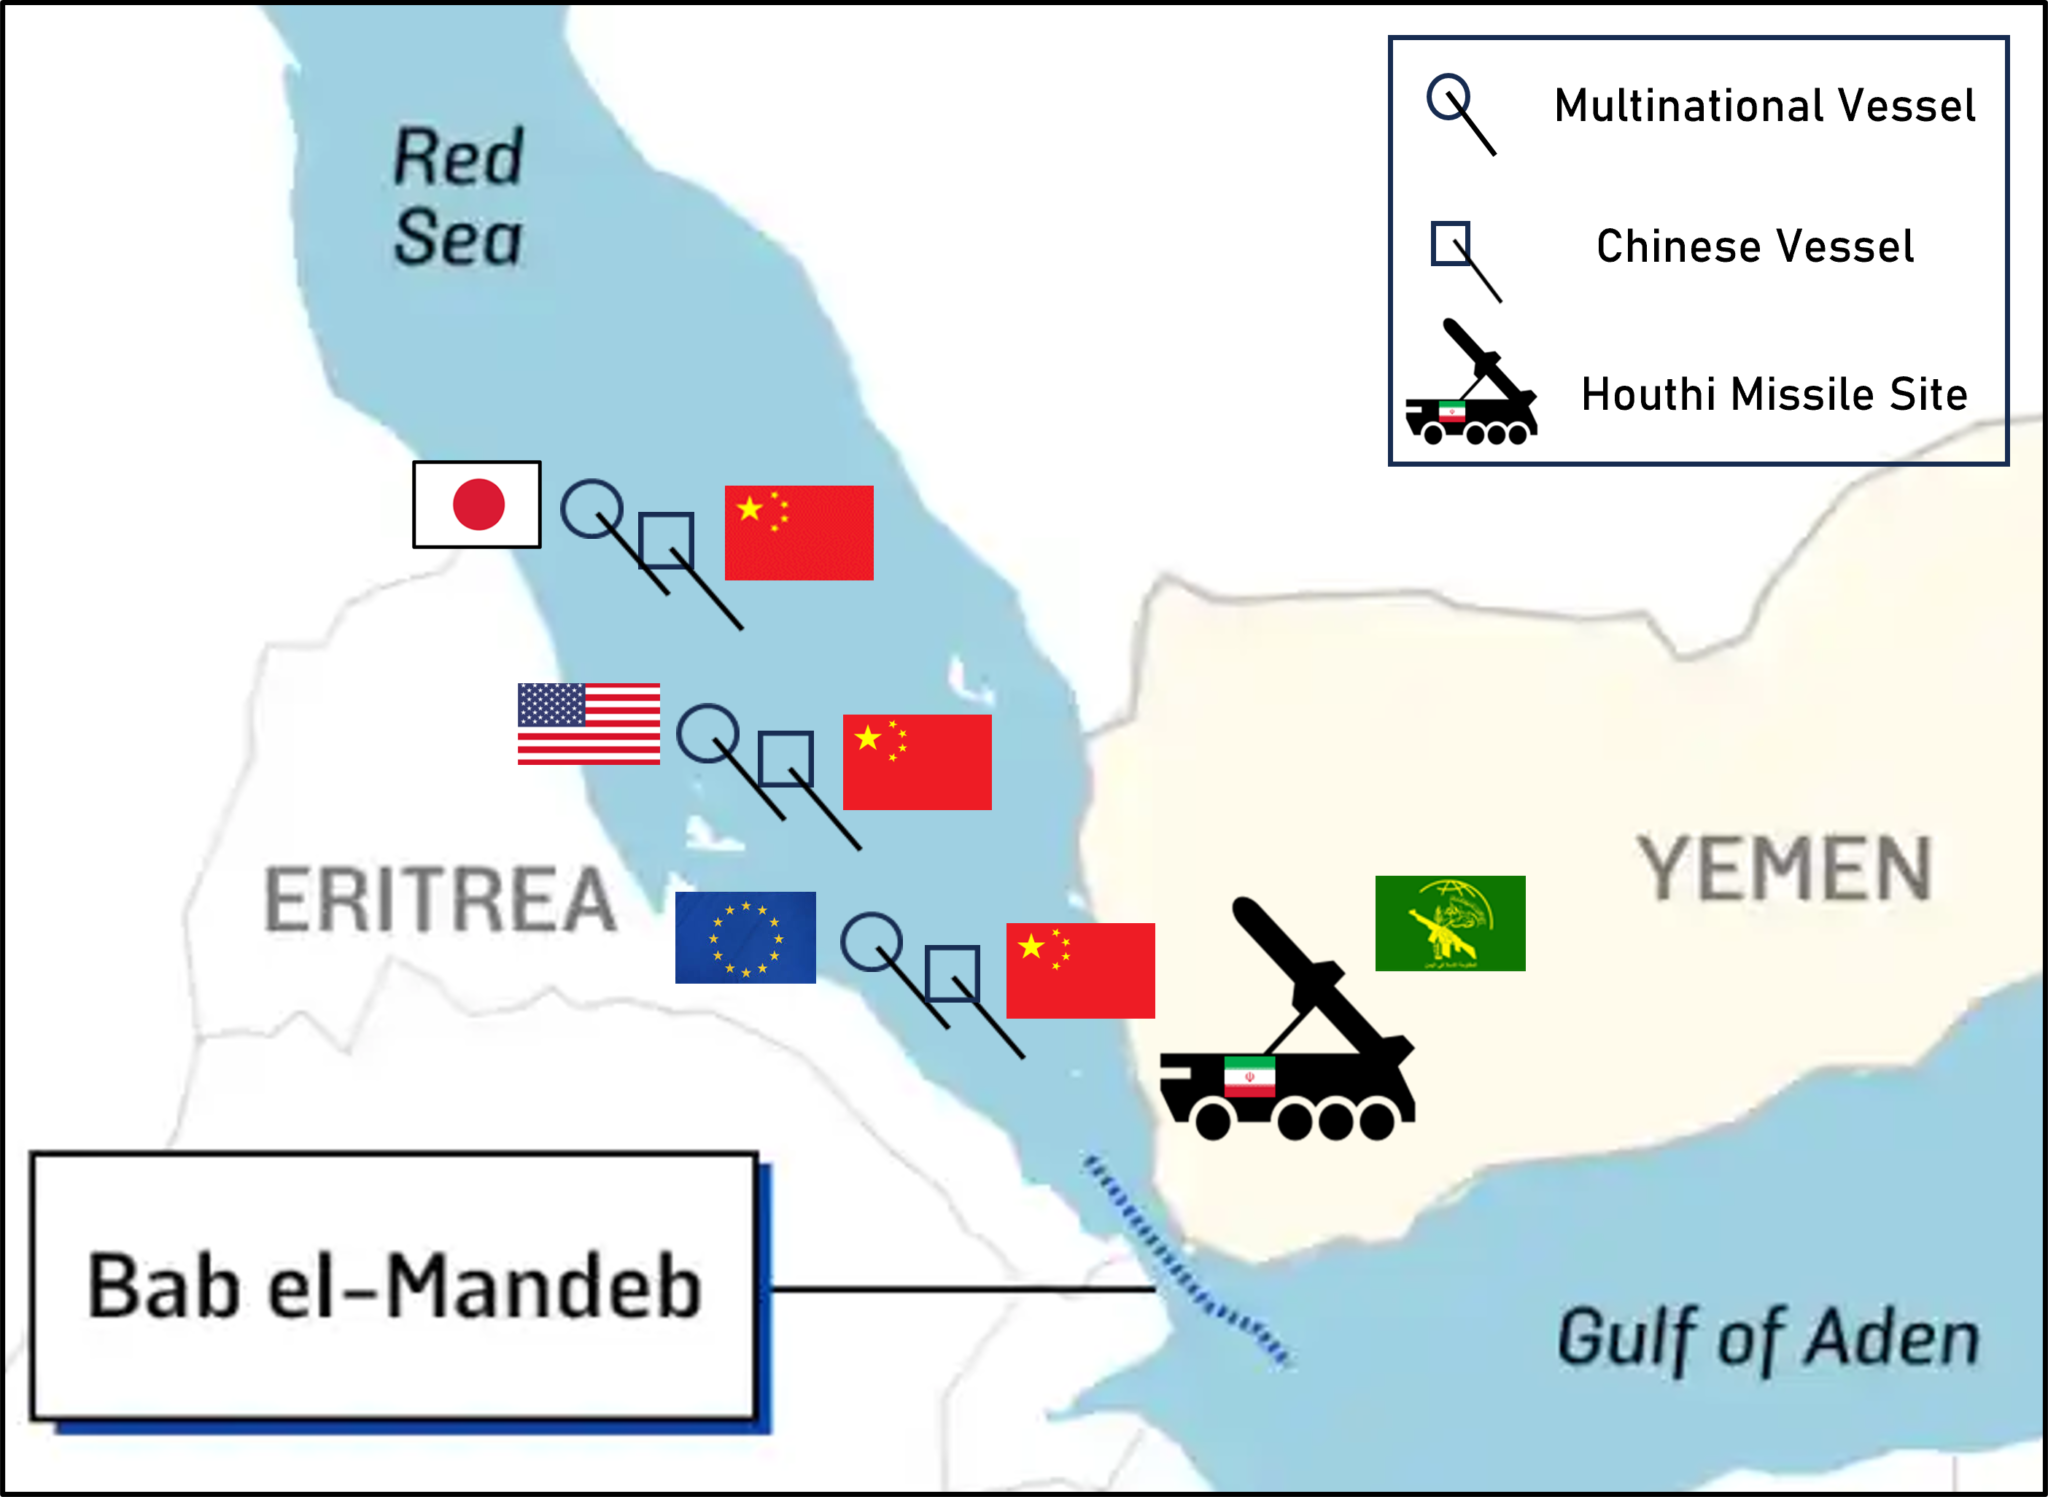 ضابط تخطيط إستراتيجي في البحرية الأمريكية يقترح “حيلة” لعبور البحر الأحمر بأمان: “عليك مرافقة سفينة صينية”